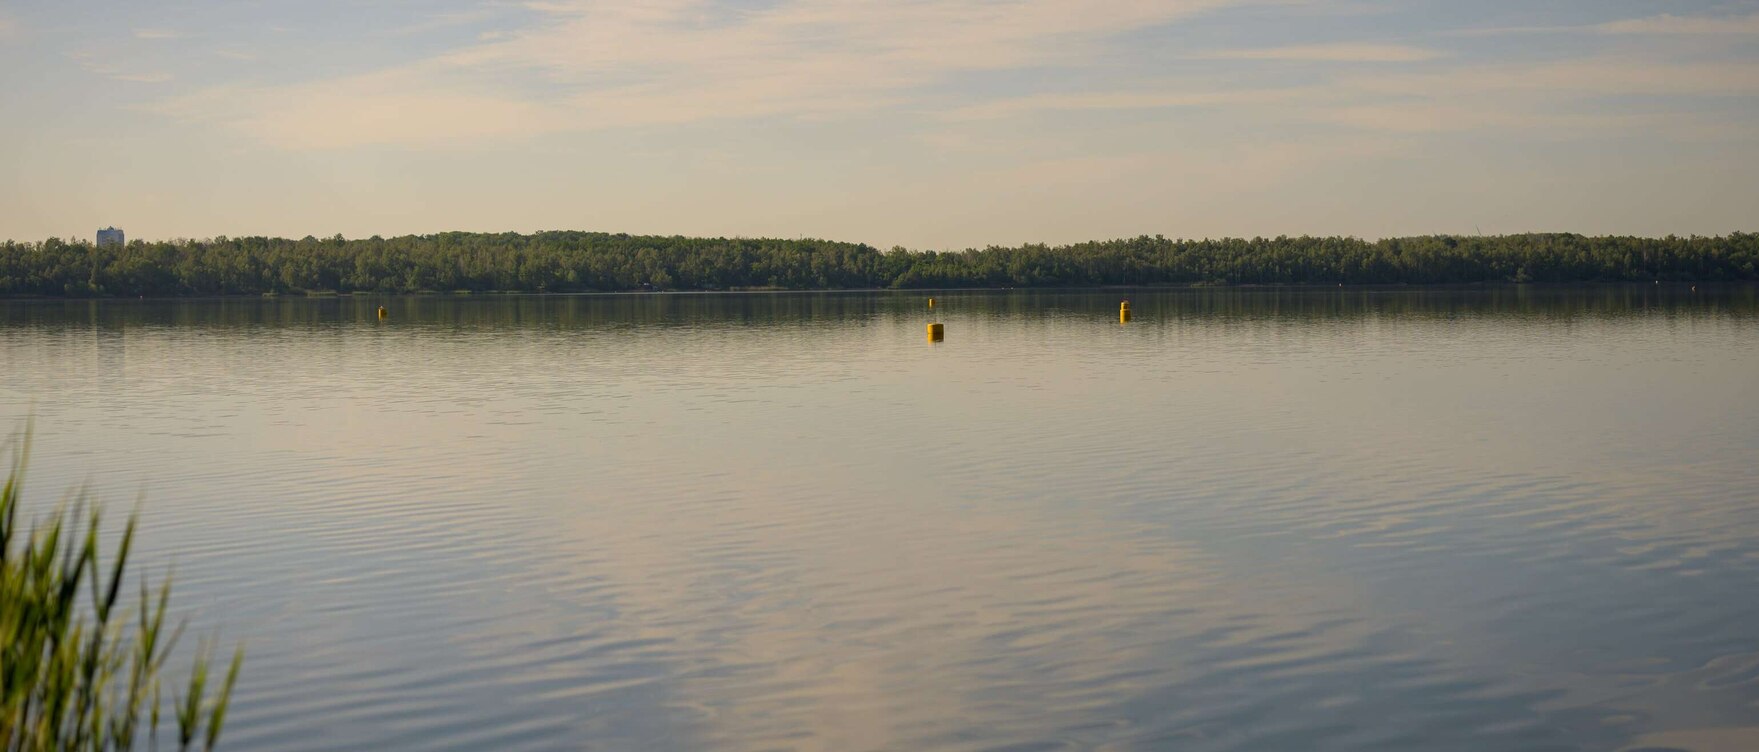 Blick vom Ufer auf die glatte Oberfläche eines Sees mit Bäumen am gegenüberliegenden Ufer